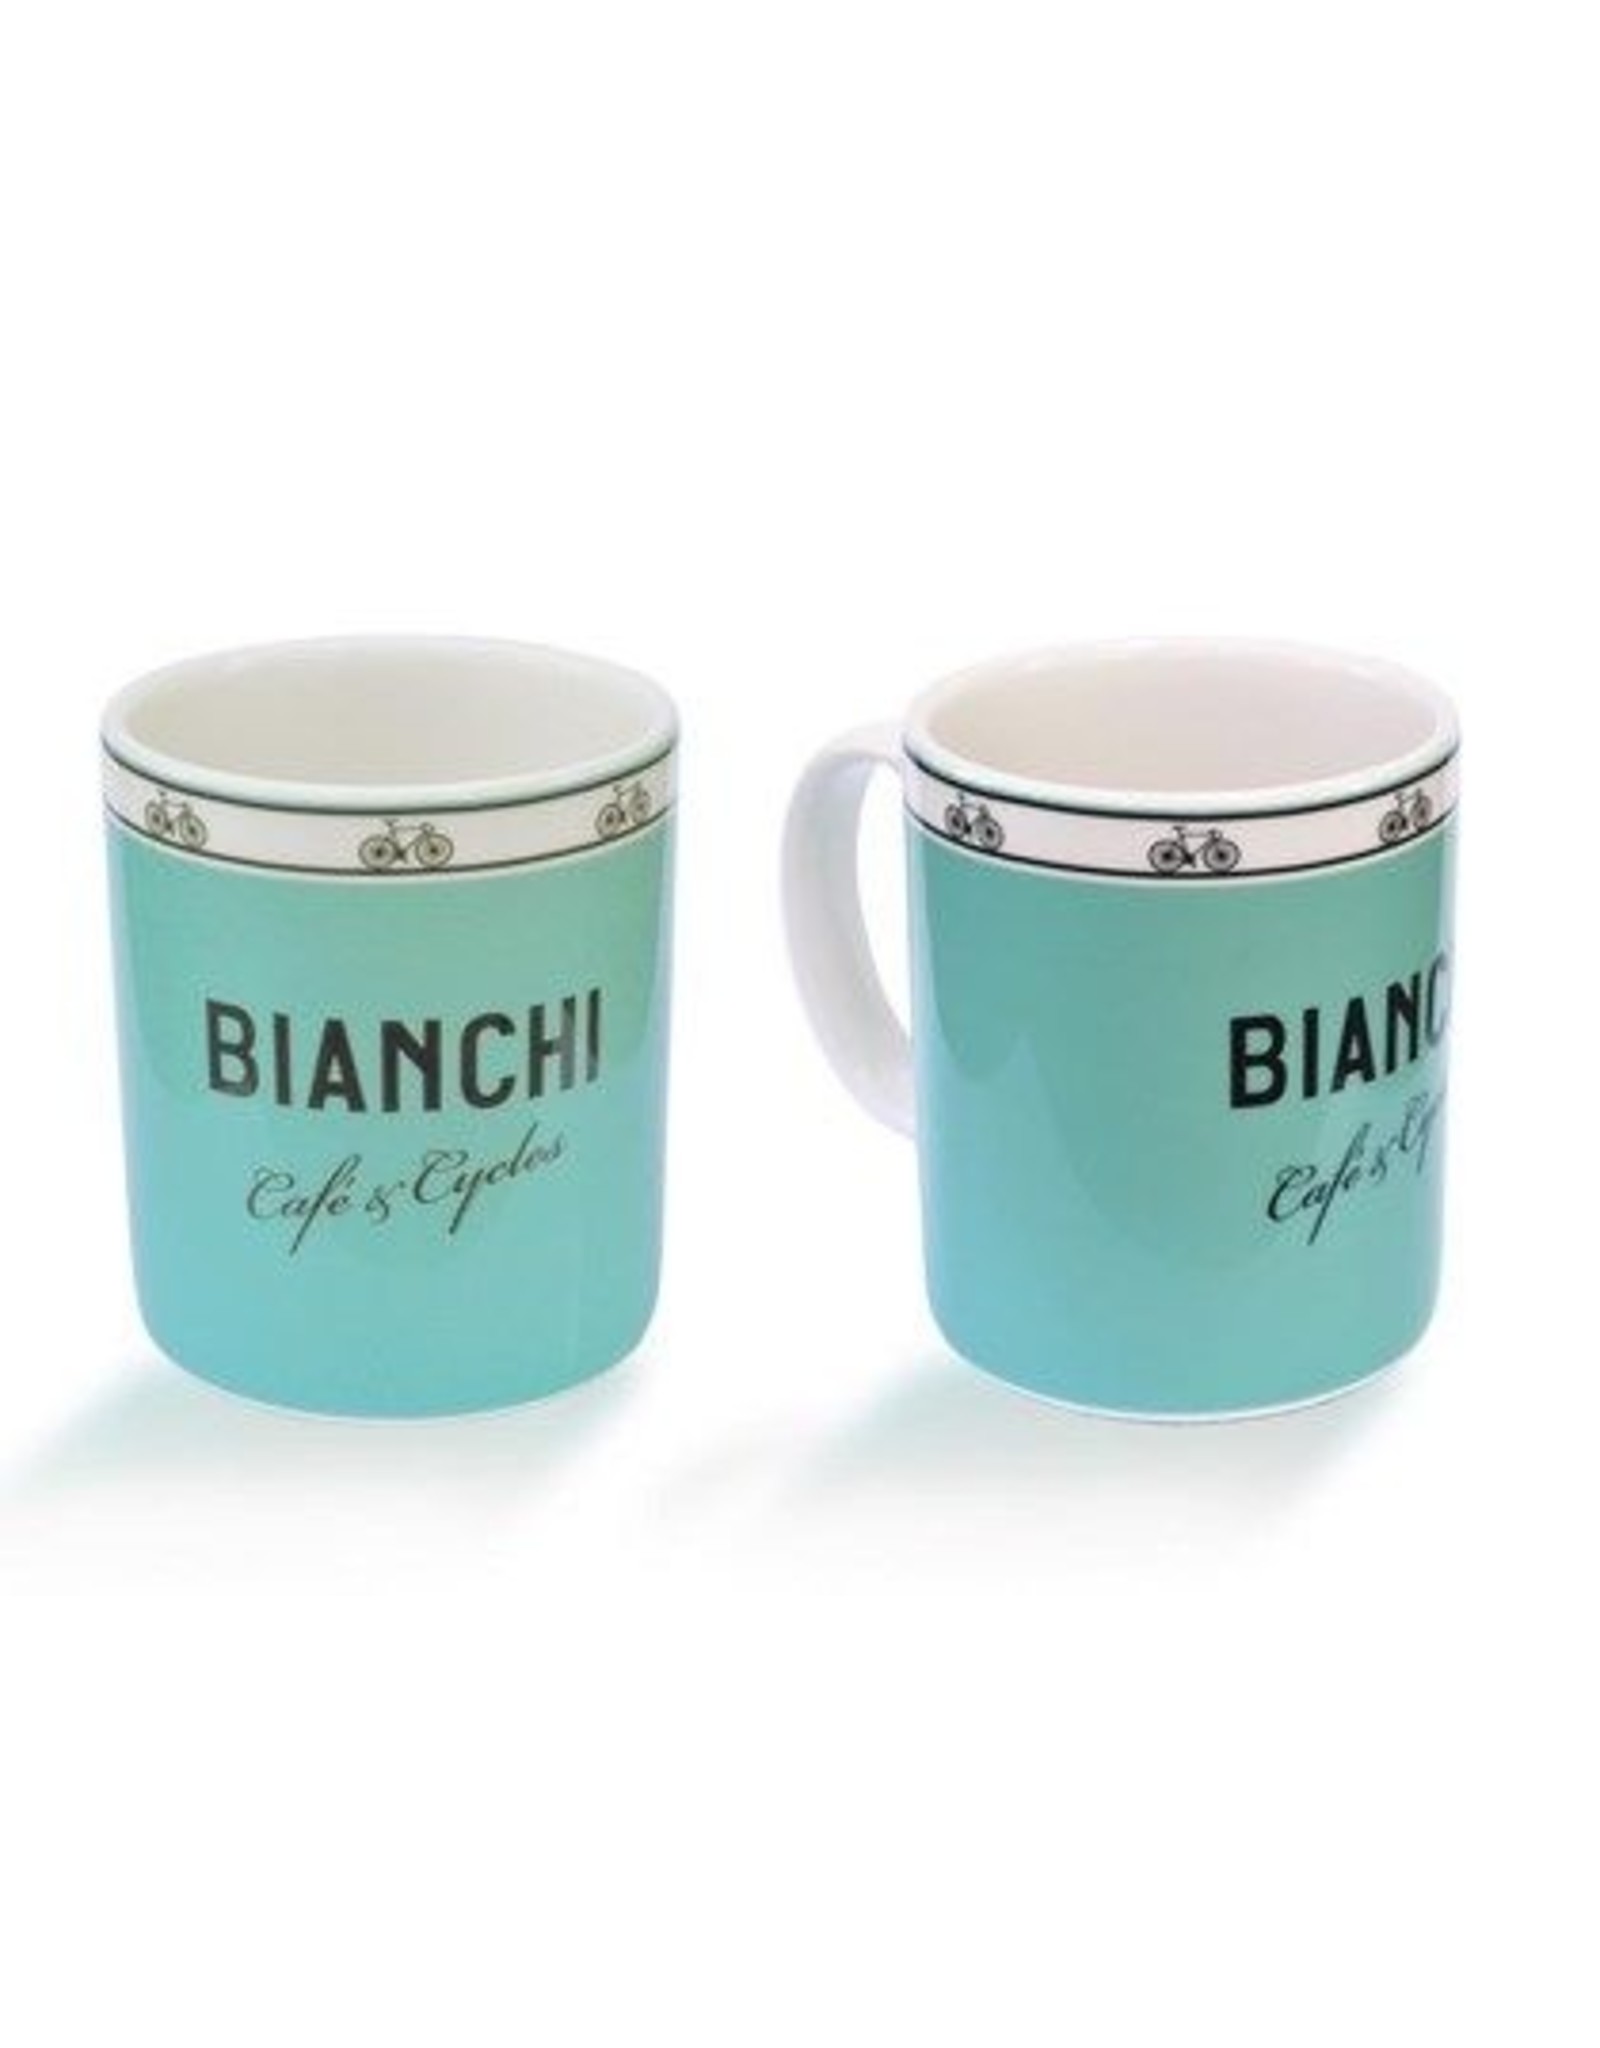 Bianchi Bianchi café mug